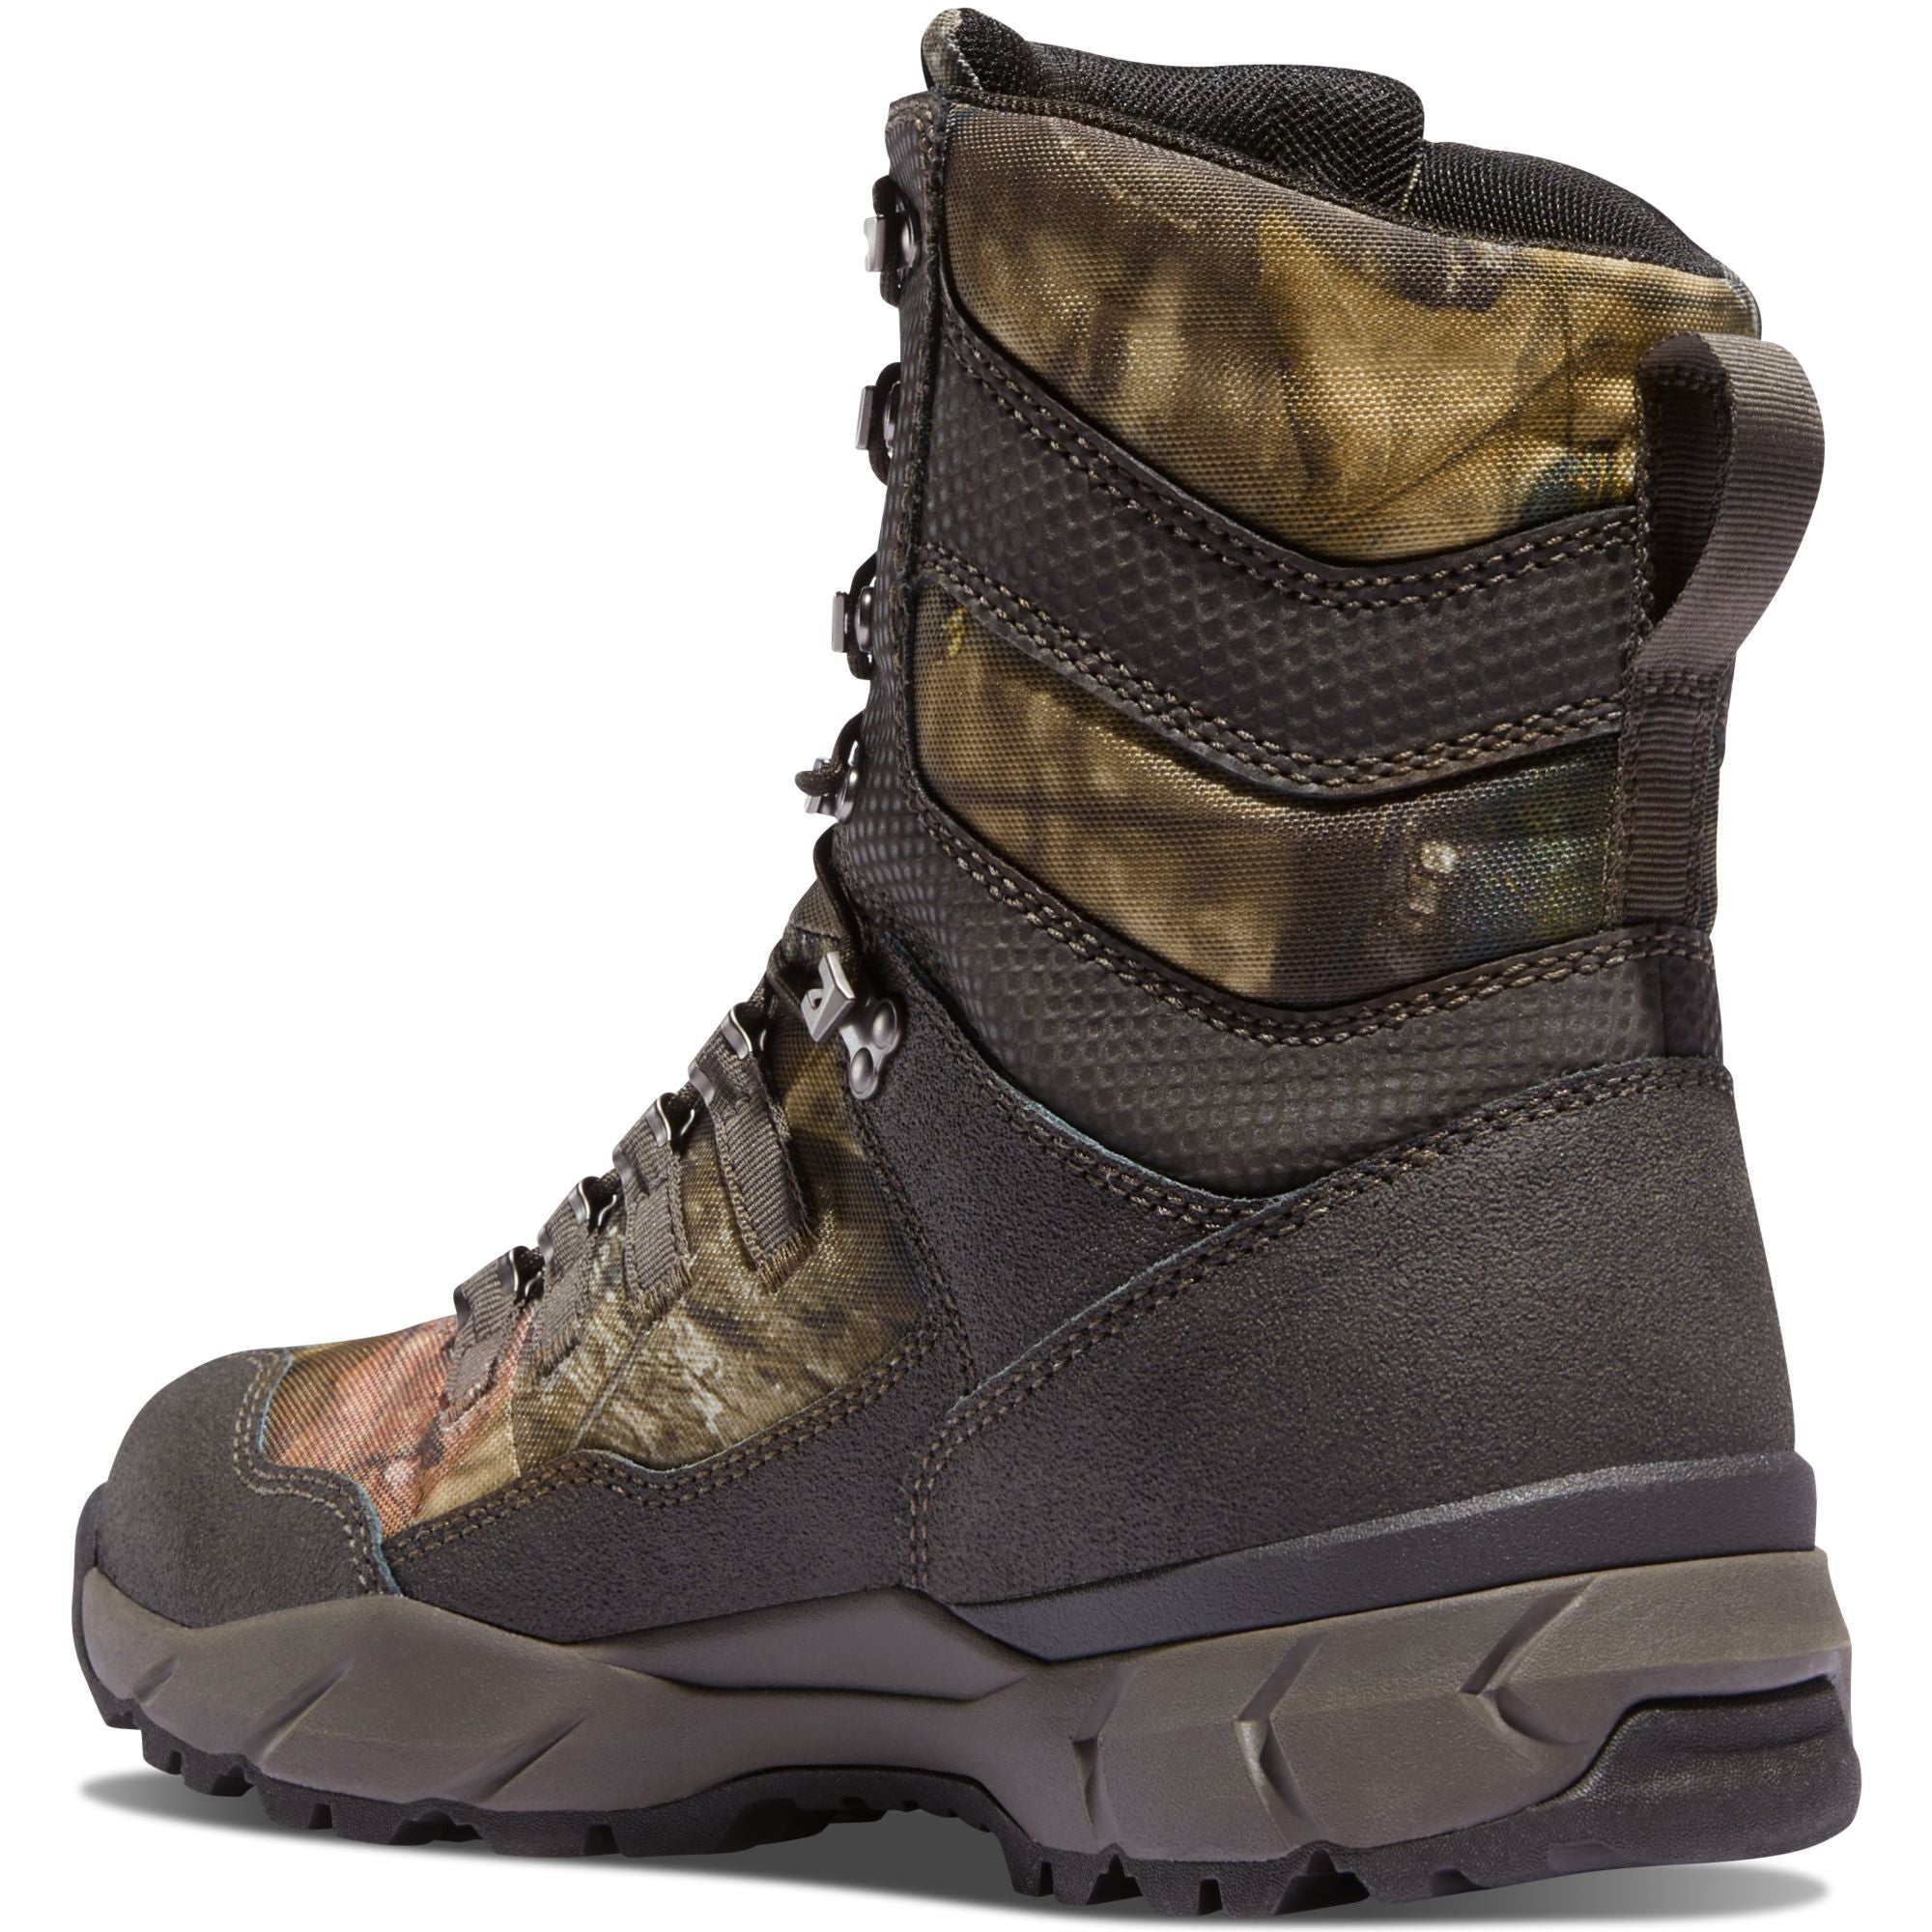 Danner Men's Vital 8" 400G Insulated WP Hunt Boot - Mossy Oak - 41552  - Overlook Boots